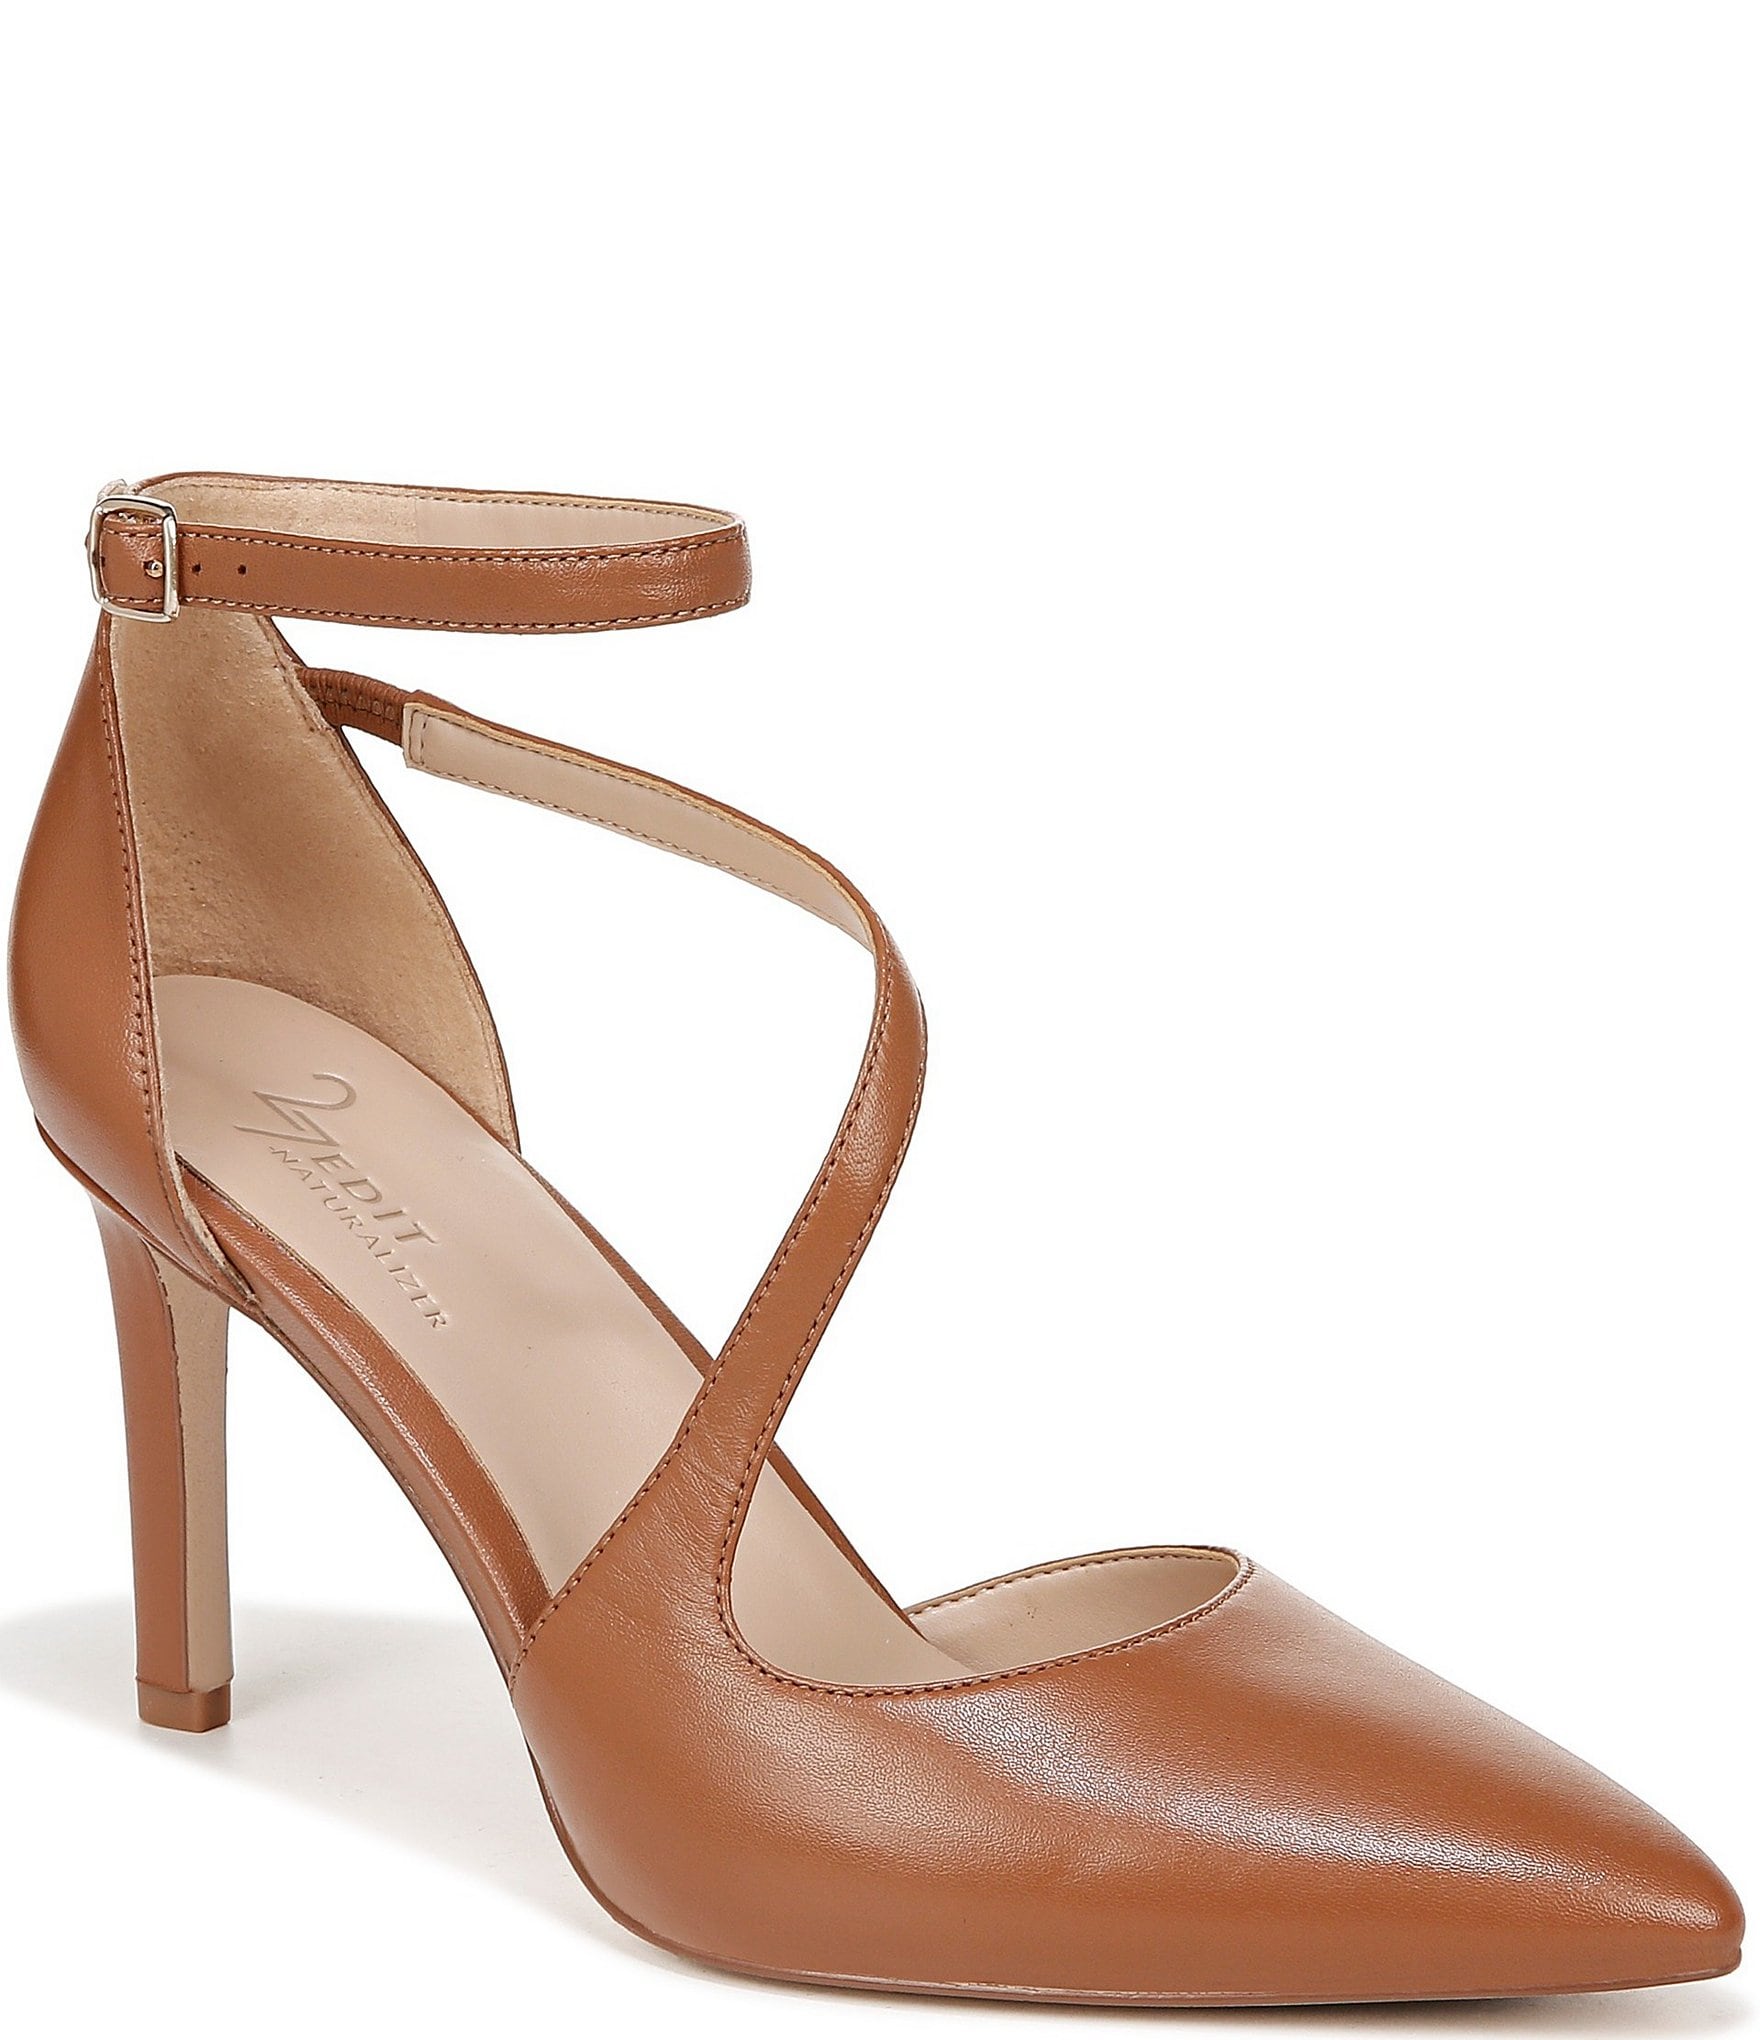 Black Velvet Almond Toe Ankle Strap Heels | Ankle strap heels, Heels,  Fashion heels